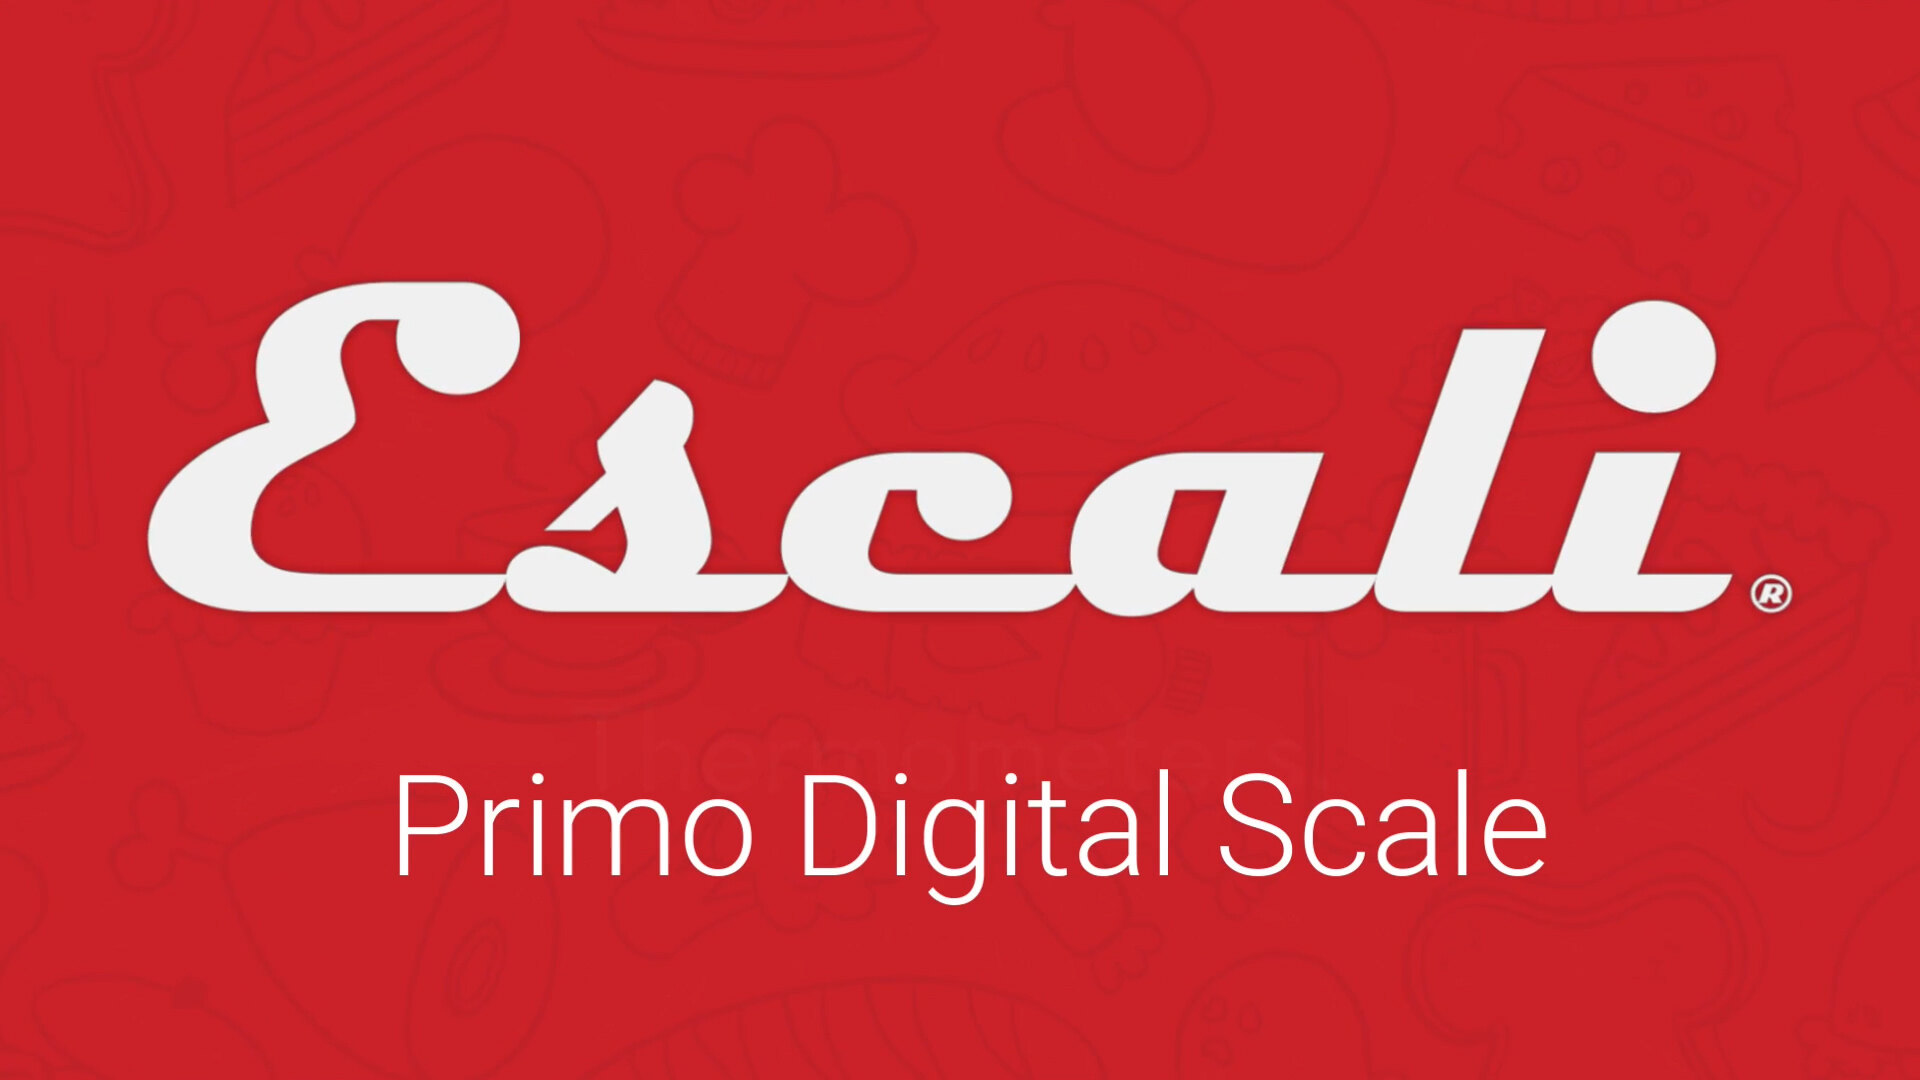 Escali Metallic Primo Digital Scale